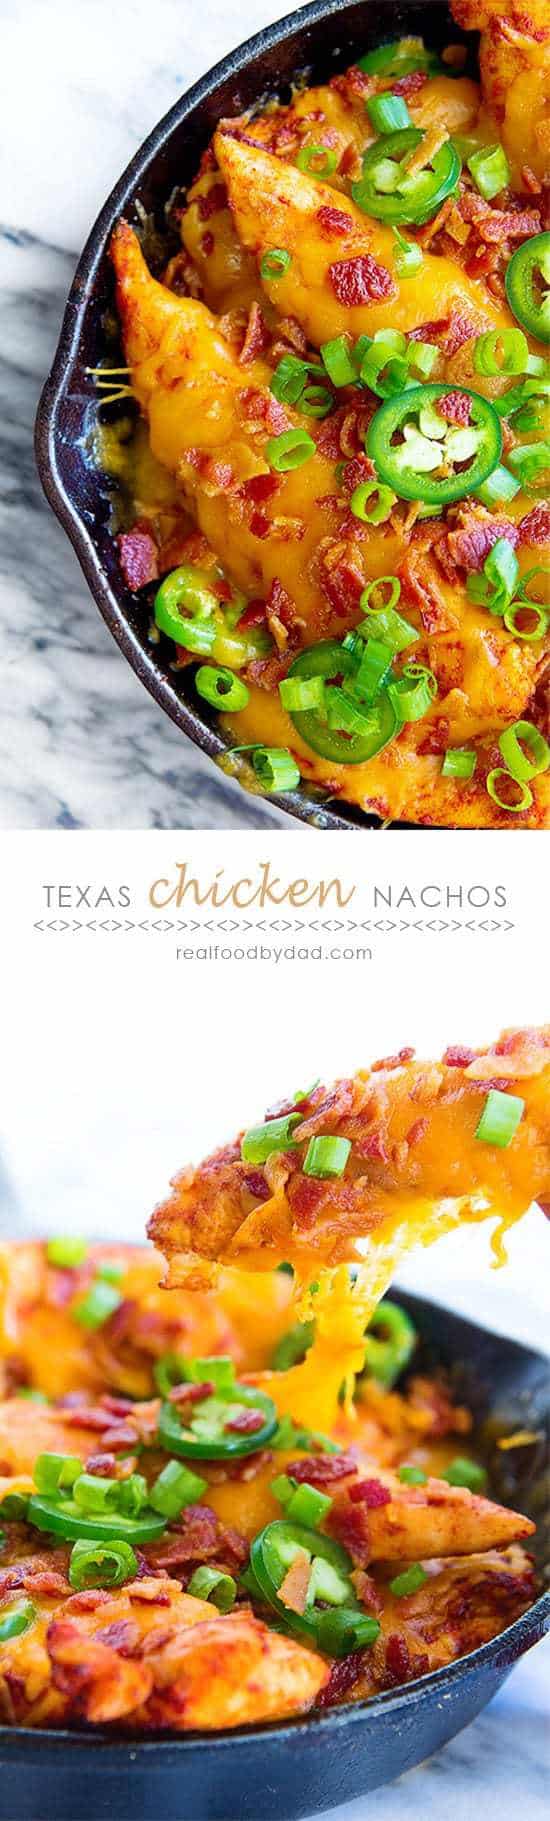 Texas Chicken Nachos